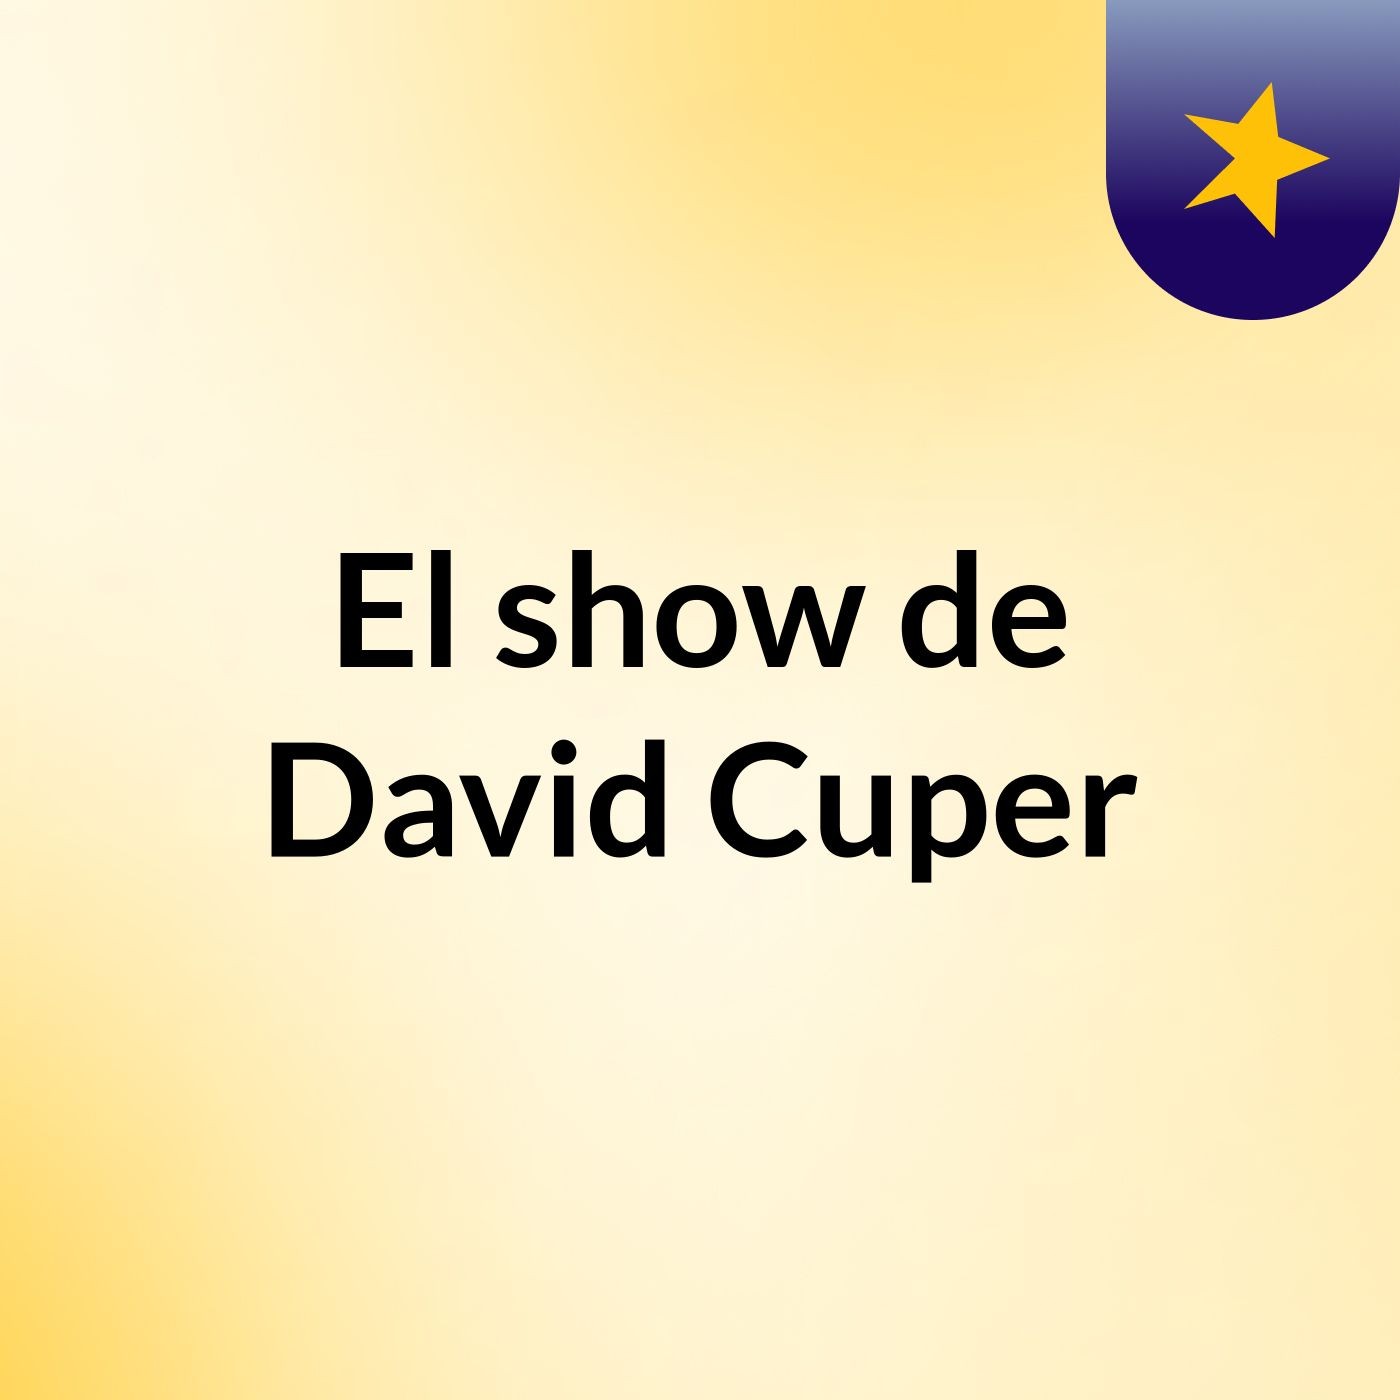 El show de David Cuper